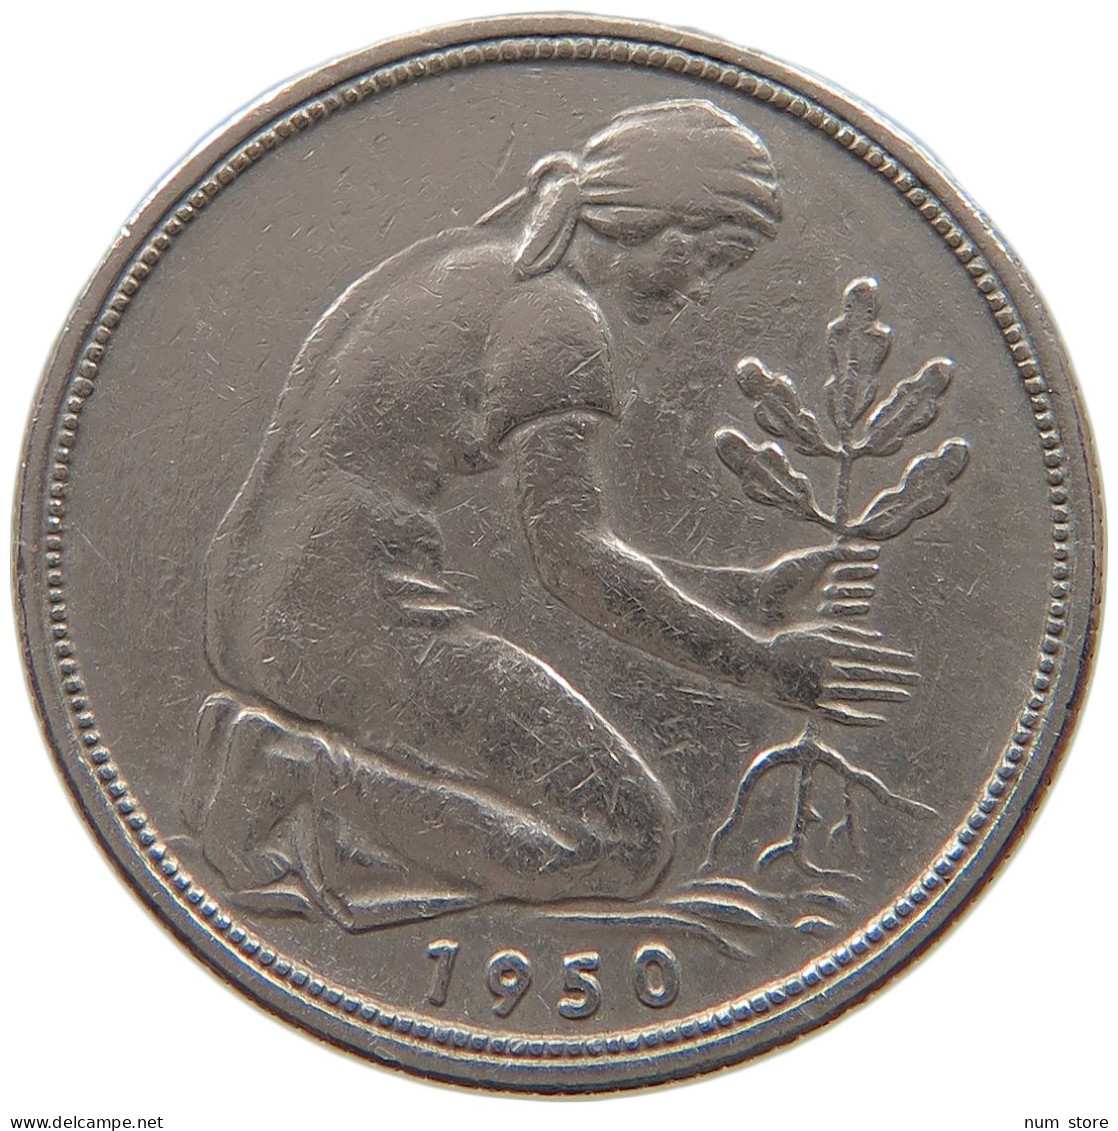 GERMANY WEST 50 PFENNIG 1950 J #a072 0691 - 50 Pfennig